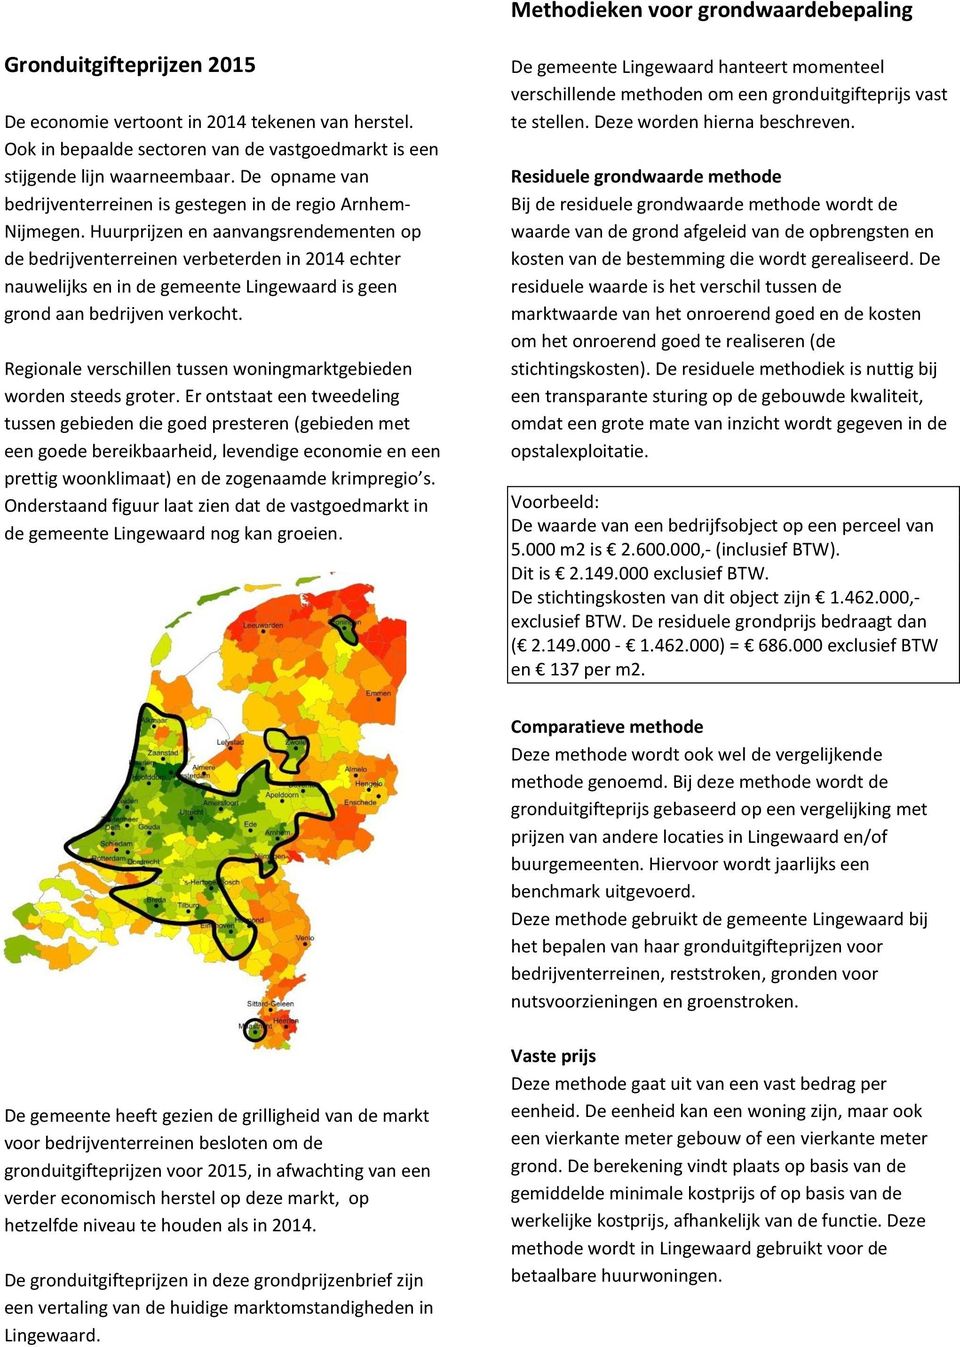 Huurprijzen en aanvangsrendementen op de bedrijventerreinen verbeterden in 2014 echter nauwelijks en in de gemeente Lingewaard is geen grond aan bedrijven verkocht.